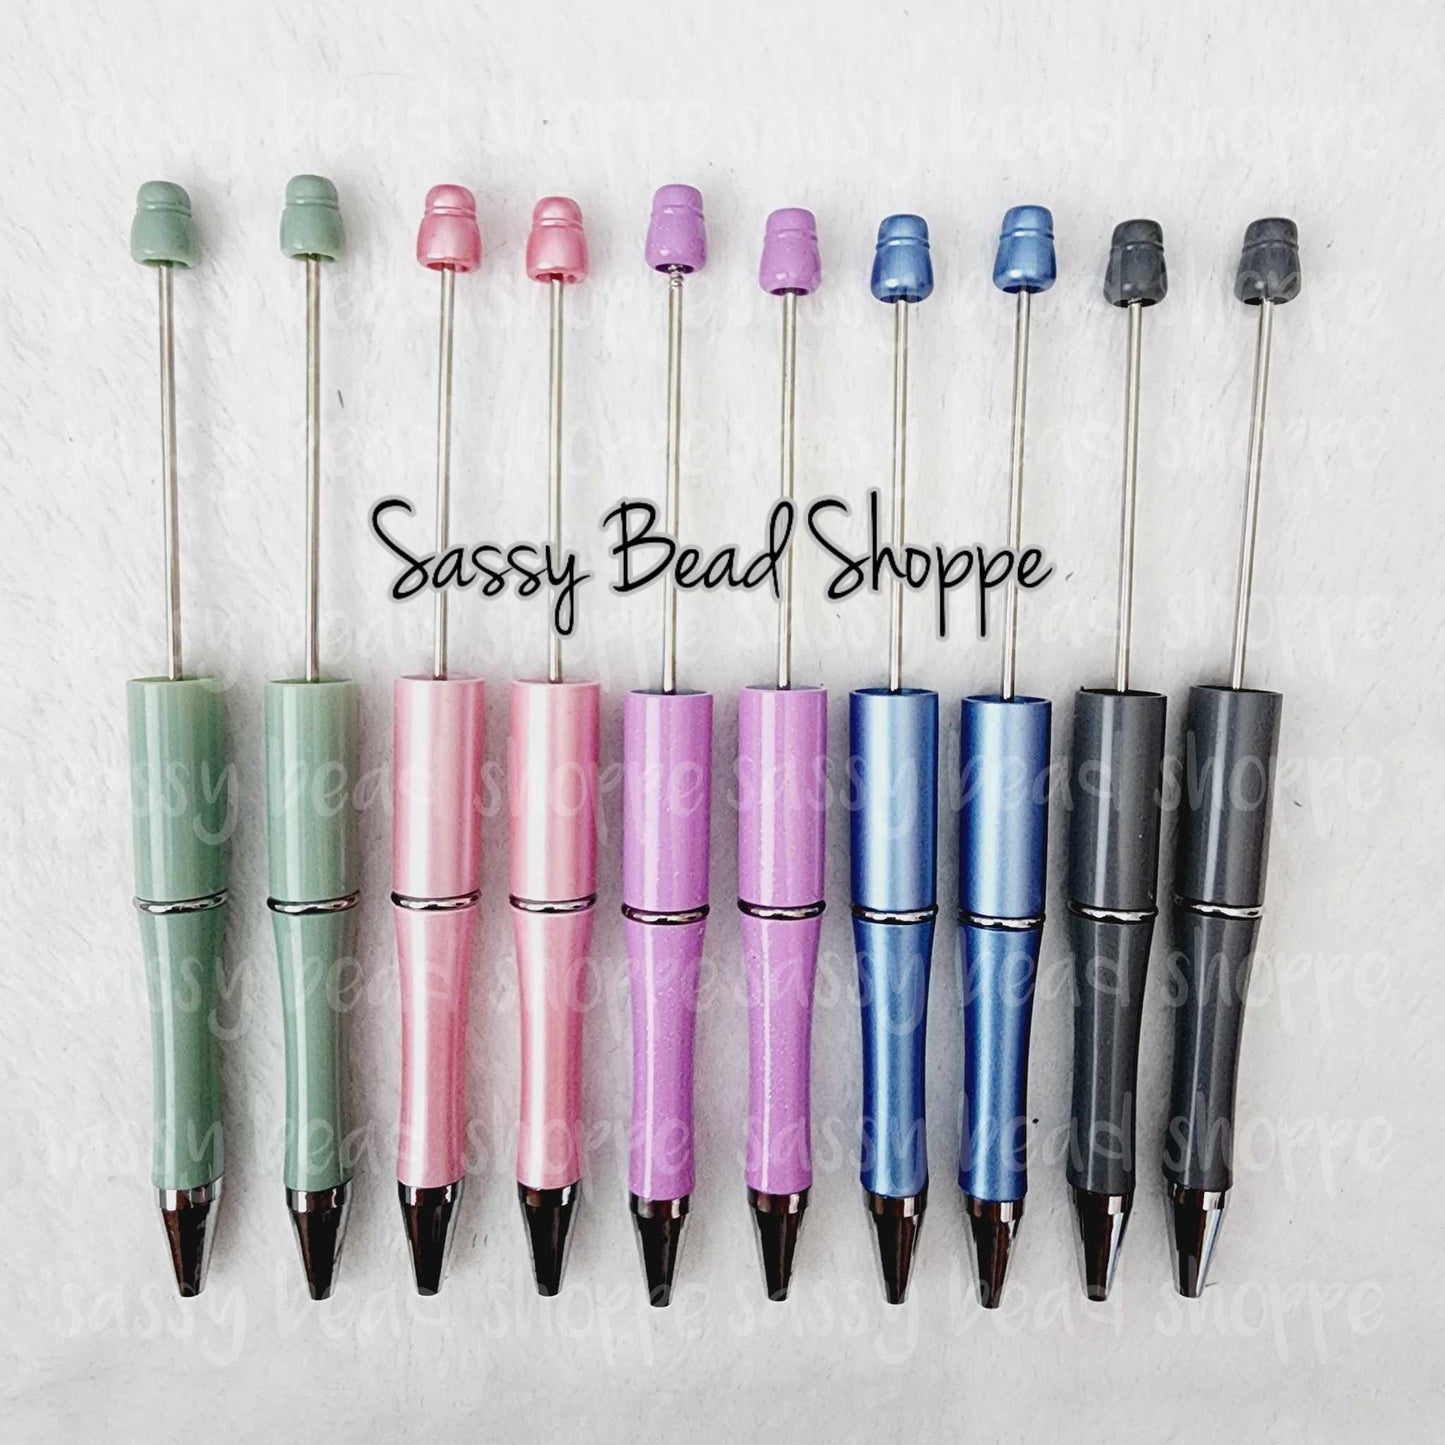 Sassy Bead Shoppe Tide In Love Pen Pack Pack of 10